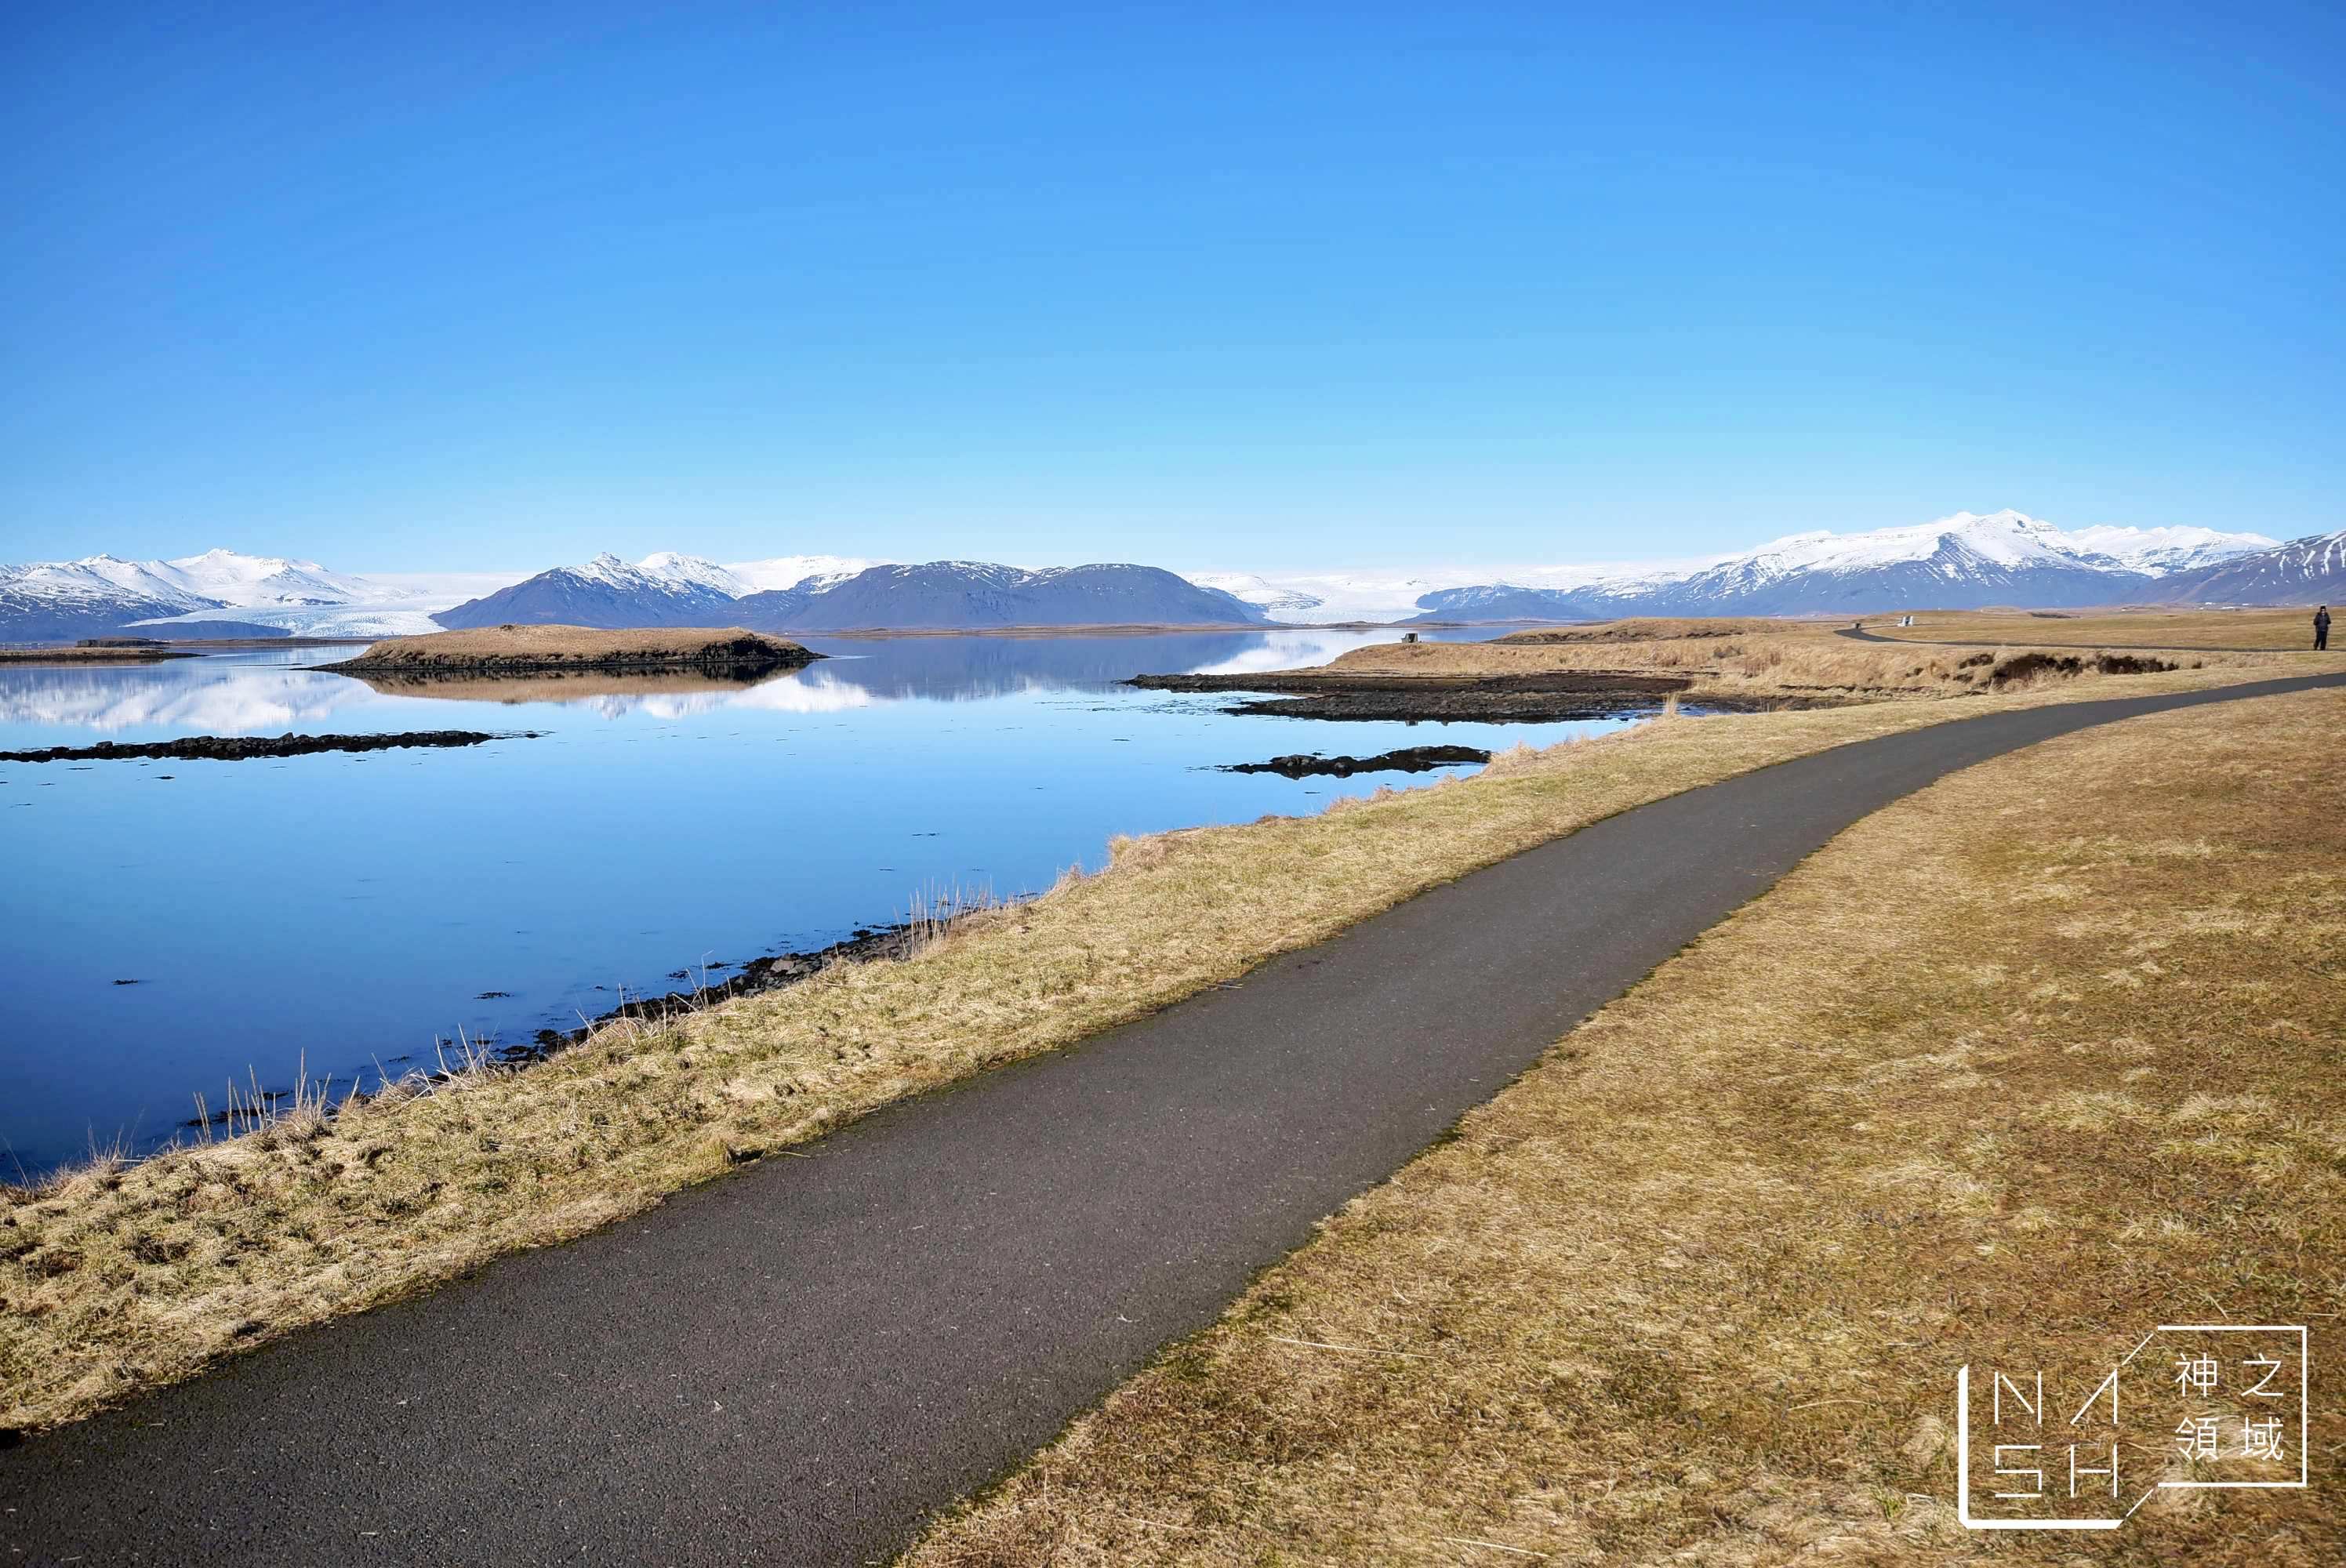 冰島赫本景點推薦,赫本Hofn,龍蝦,極光,冰島自由行環島景點推薦